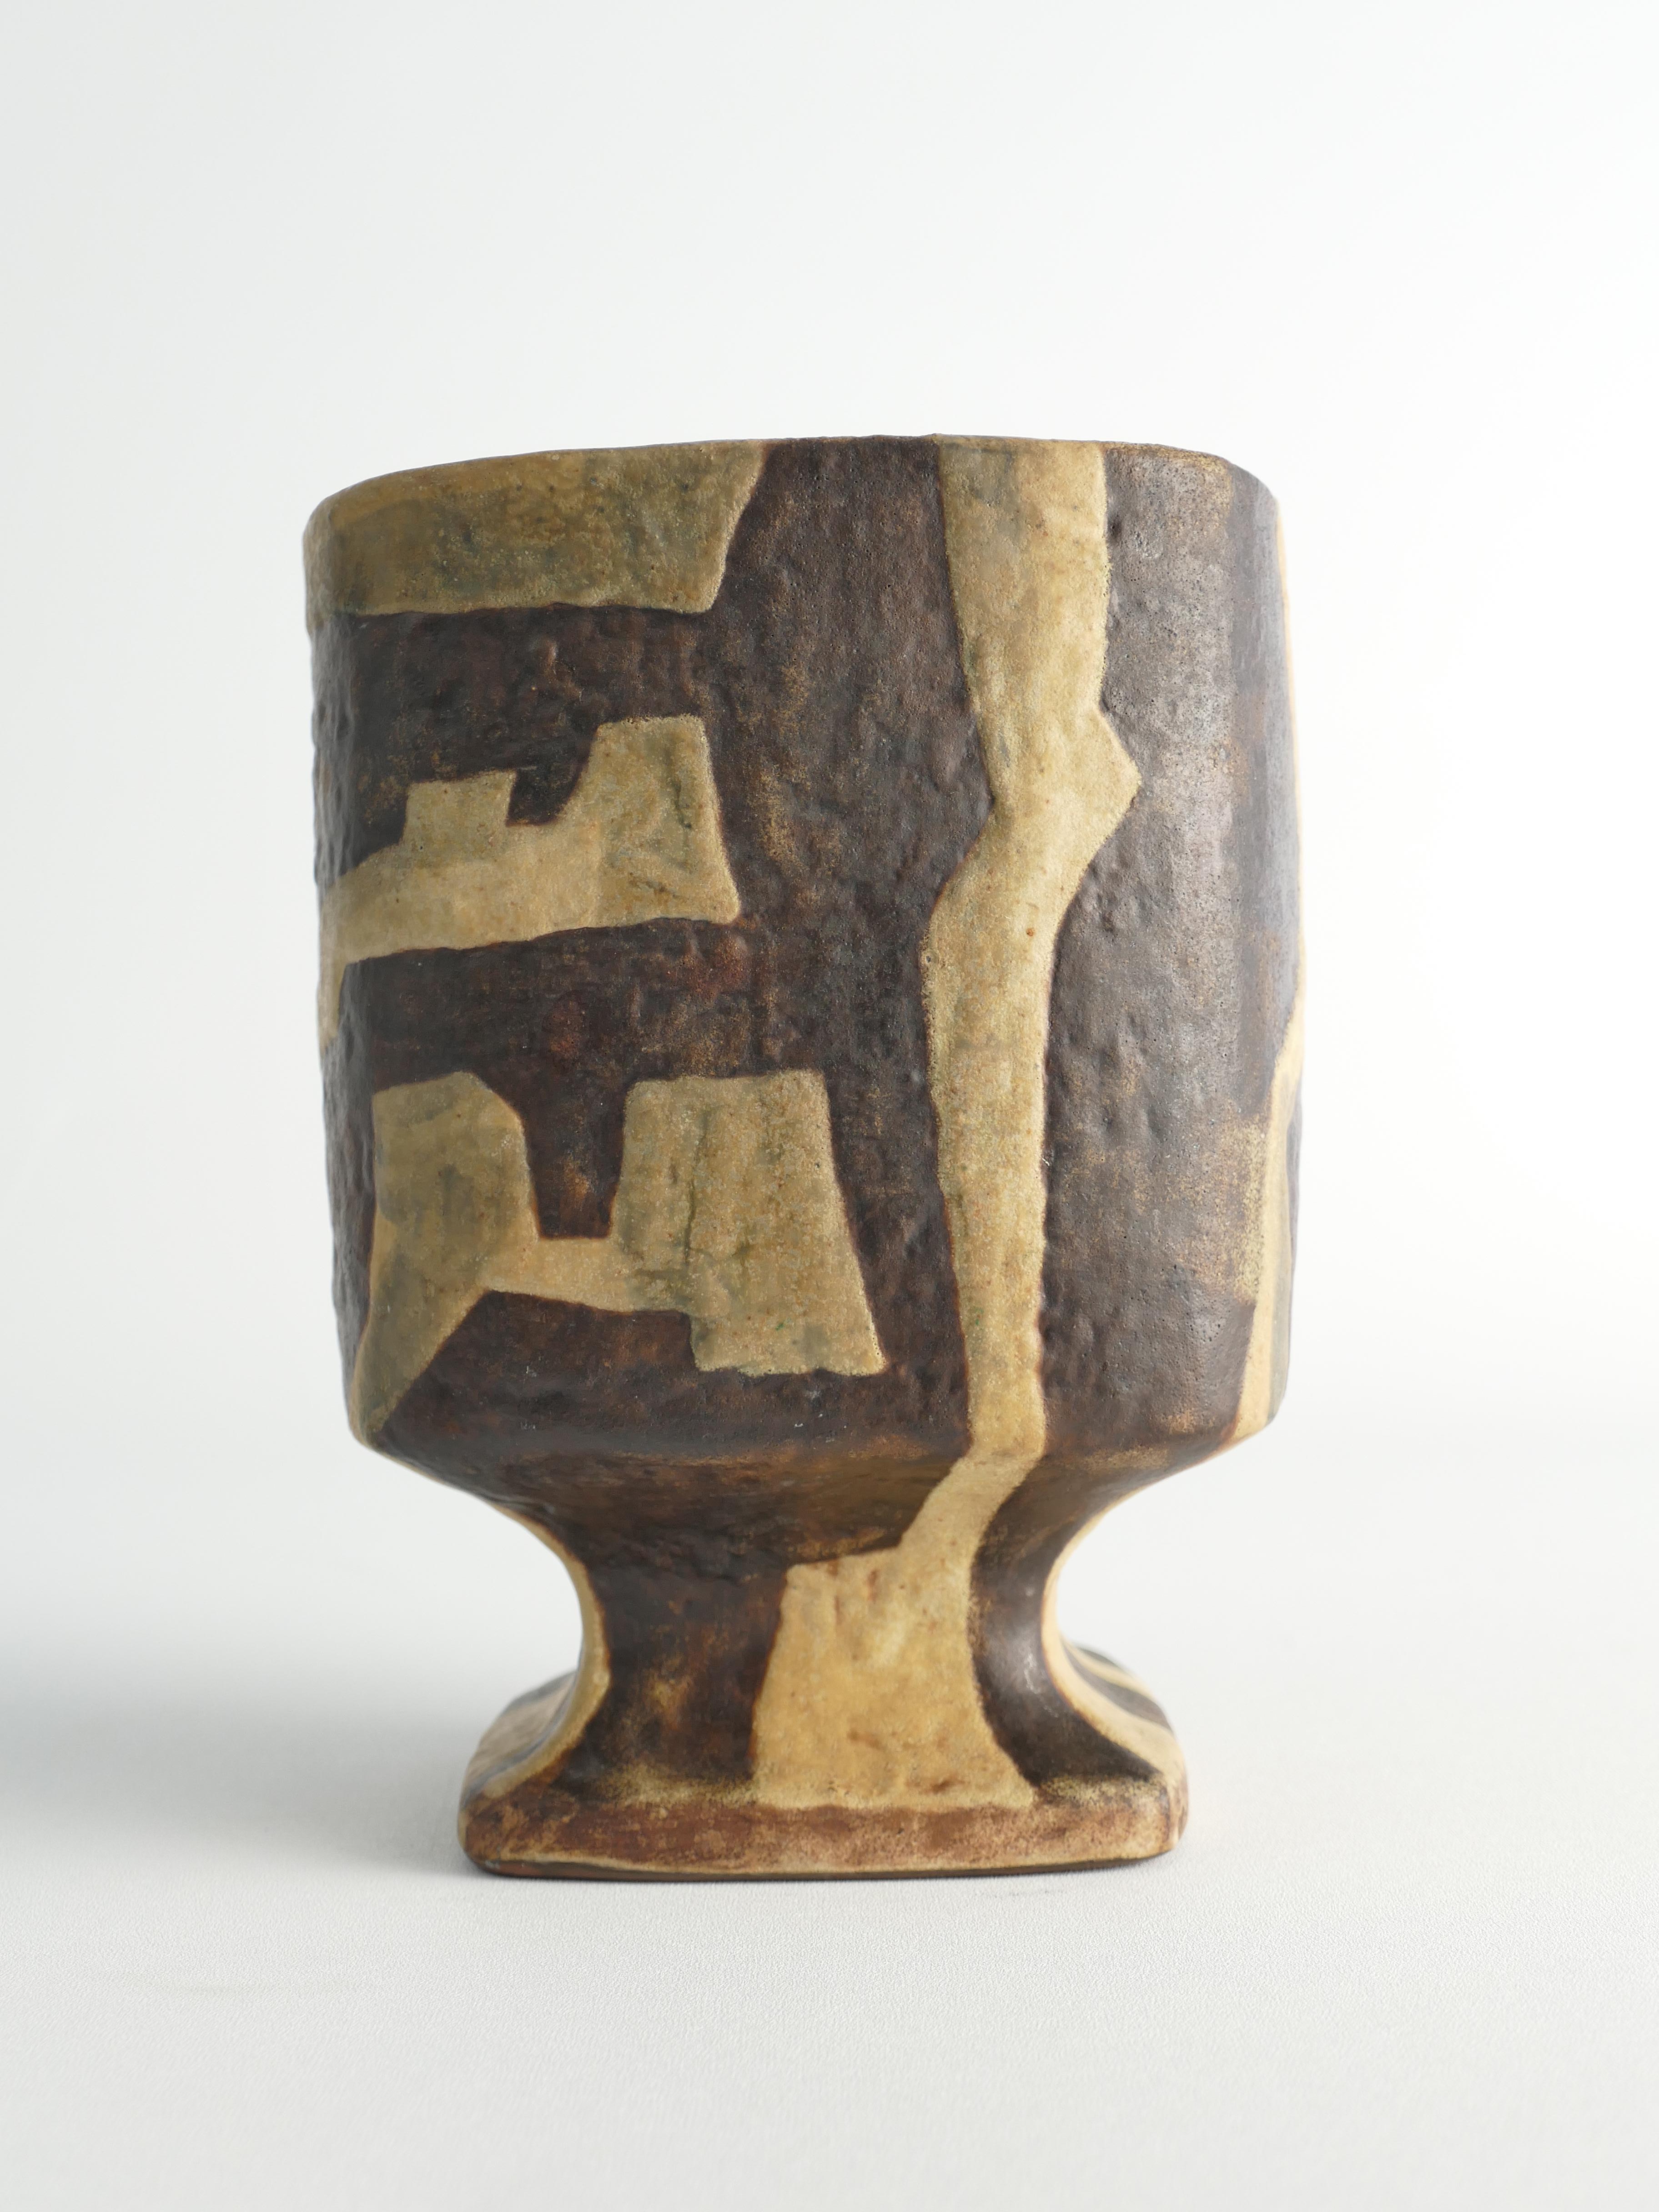 Glazed Midcentury Modern Fat Lava Ceramic Vase by Fridegart Glatzle, Karlsruhe, 1960s For Sale